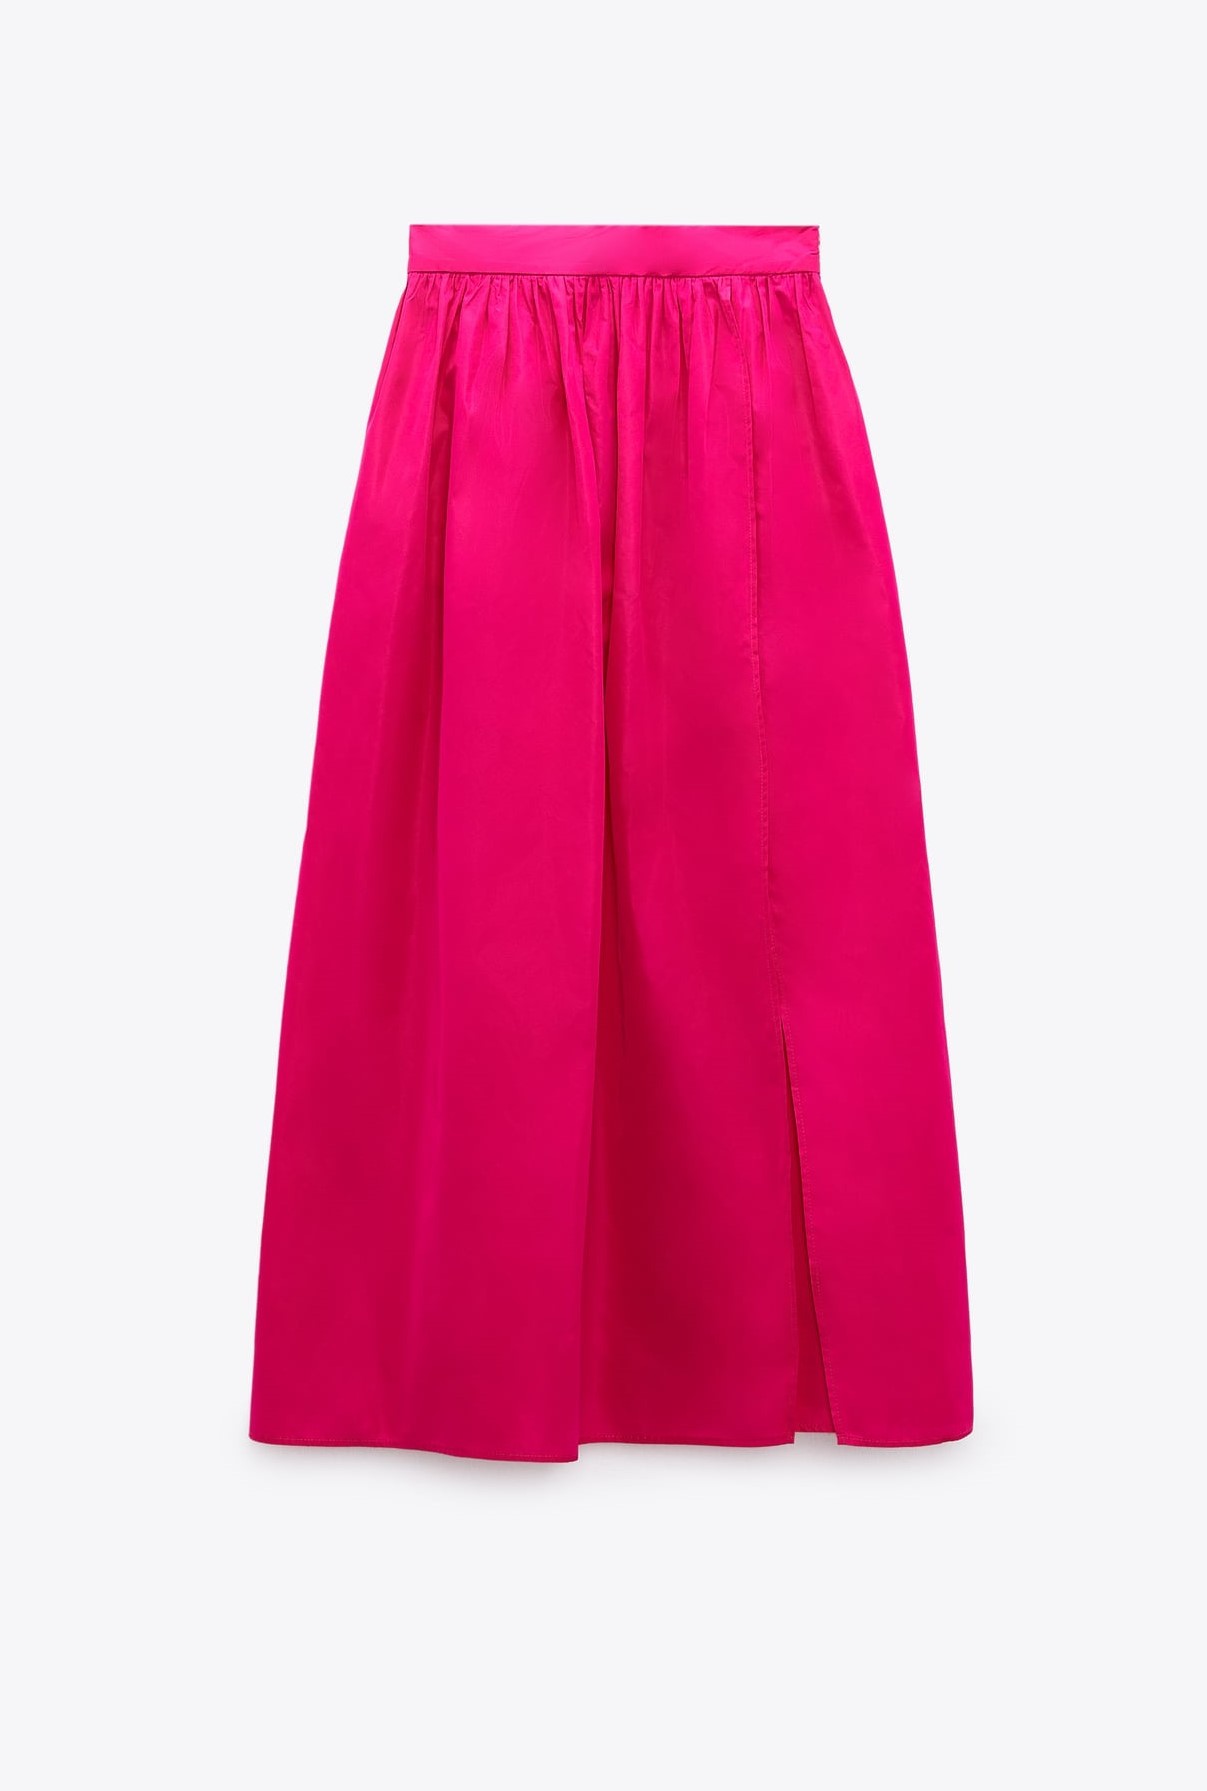 Falda rosa fucsia de Zara.